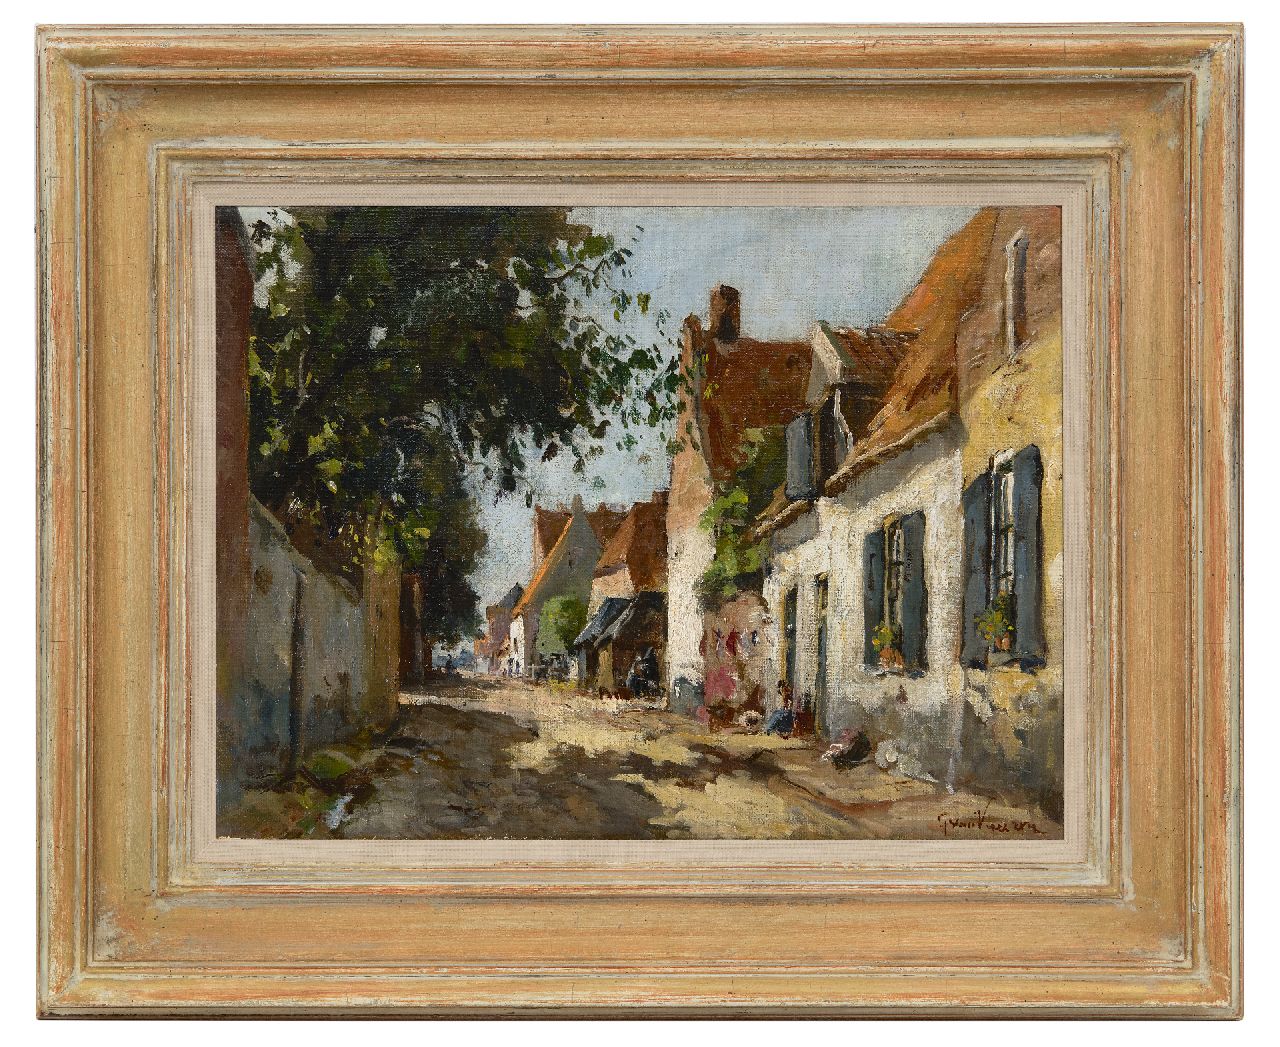 Vuuren J. van | Jan van Vuuren, Zonnig straatje in Elburg, olieverf op doek 30,0 x 39,8 cm, gesigneerd rechtsonder